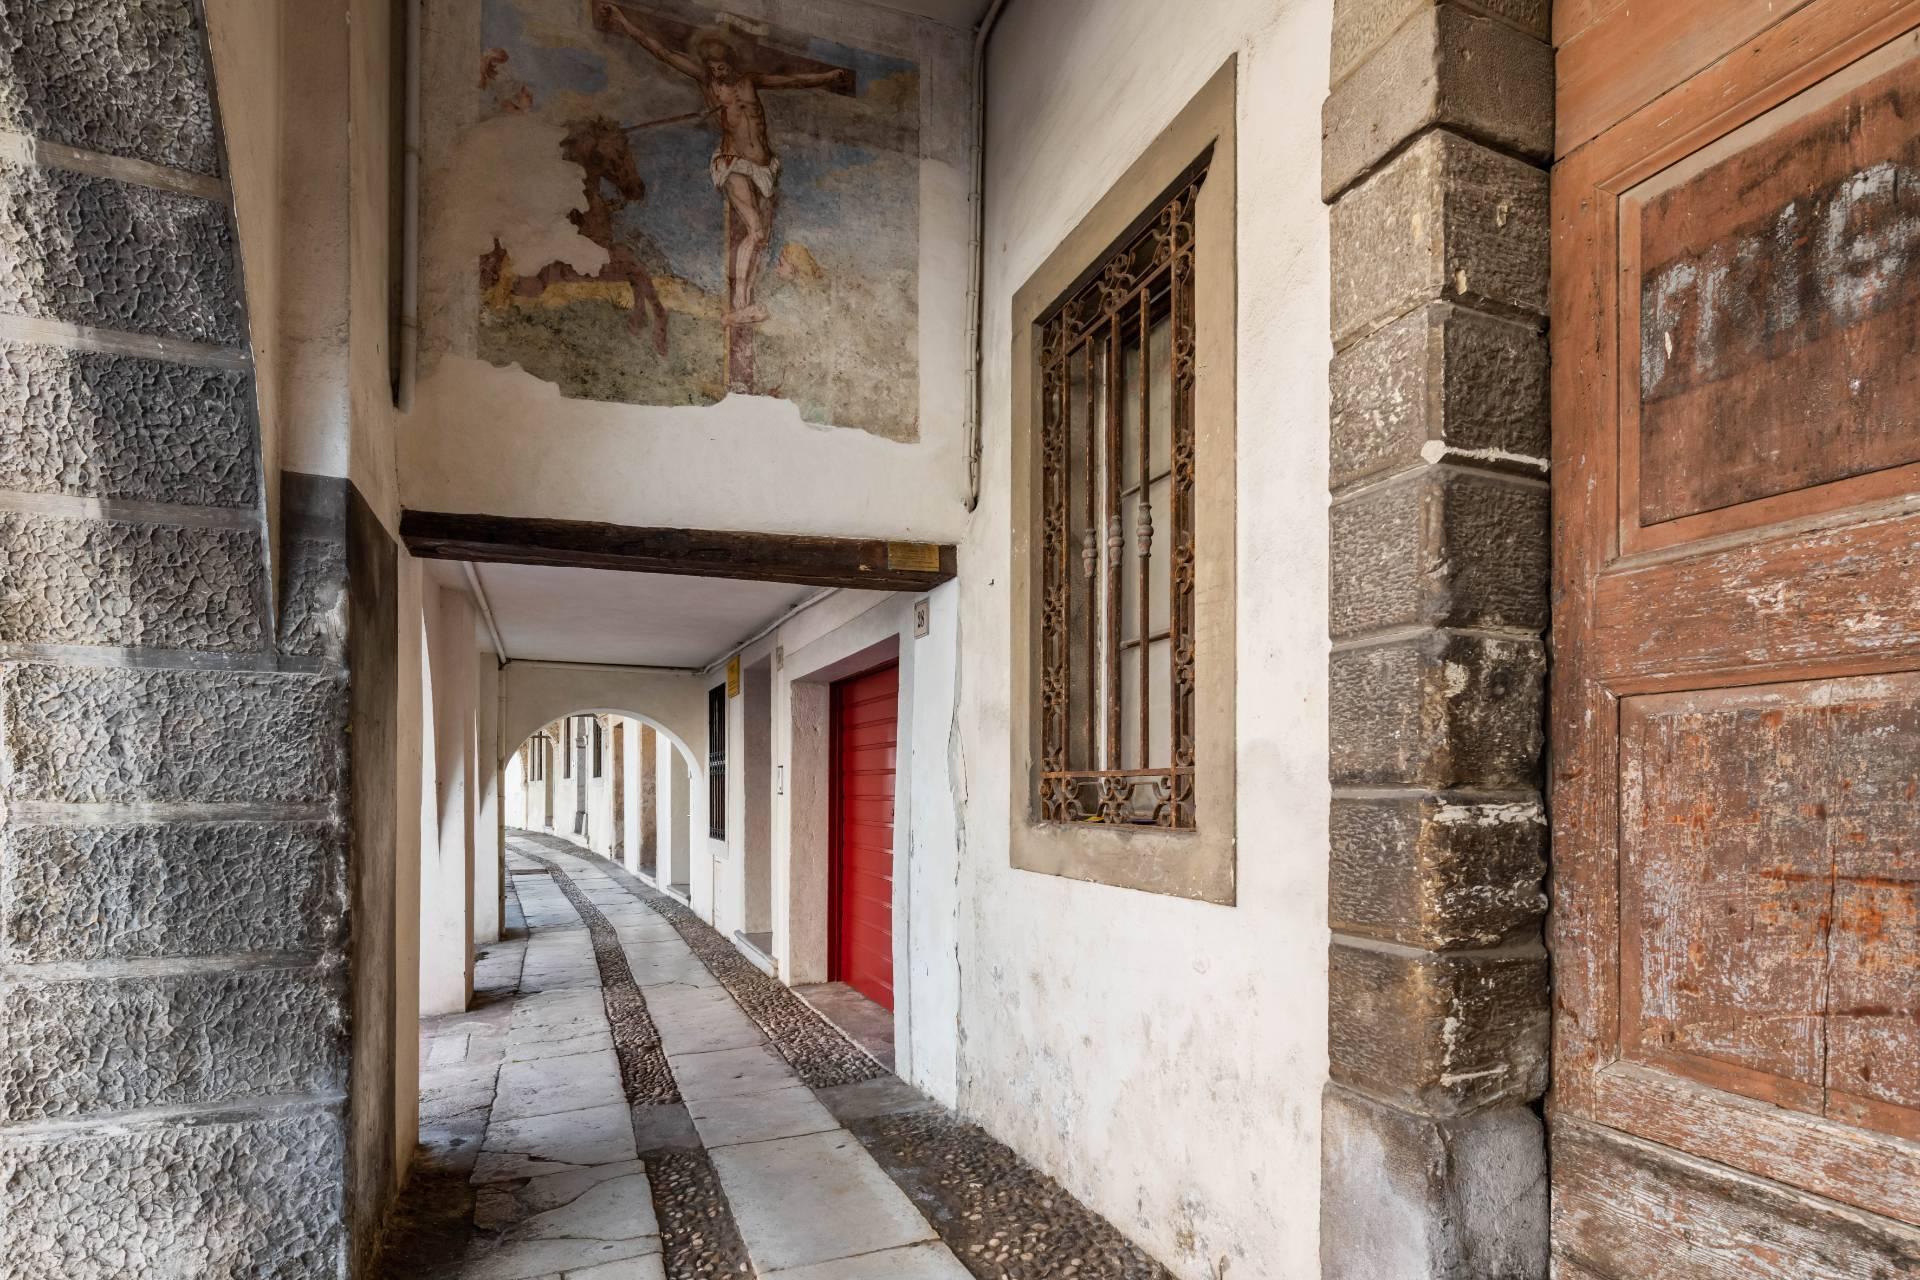 Palazzetto d'epoca del '400 ristrutturato, nel centro storico di Serravalle, dimora del pittore Antonello Da Serravalle - 23